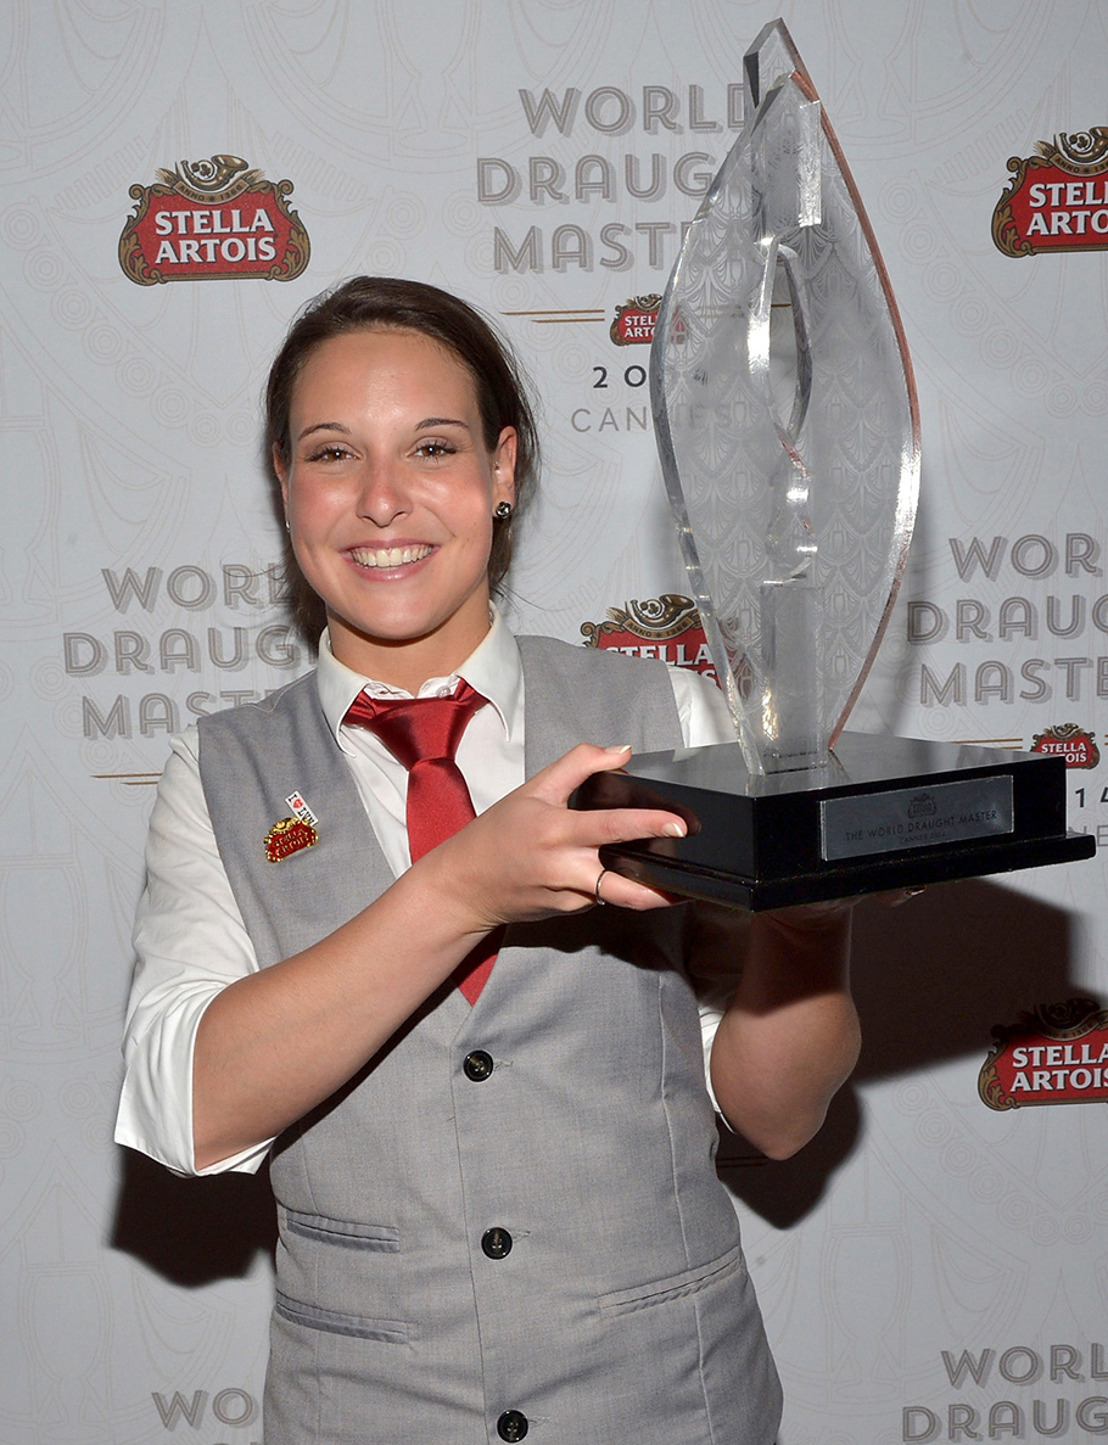 Une Belge remporte la finale des Stella Artois World Draught Masters 2014 à Cannes